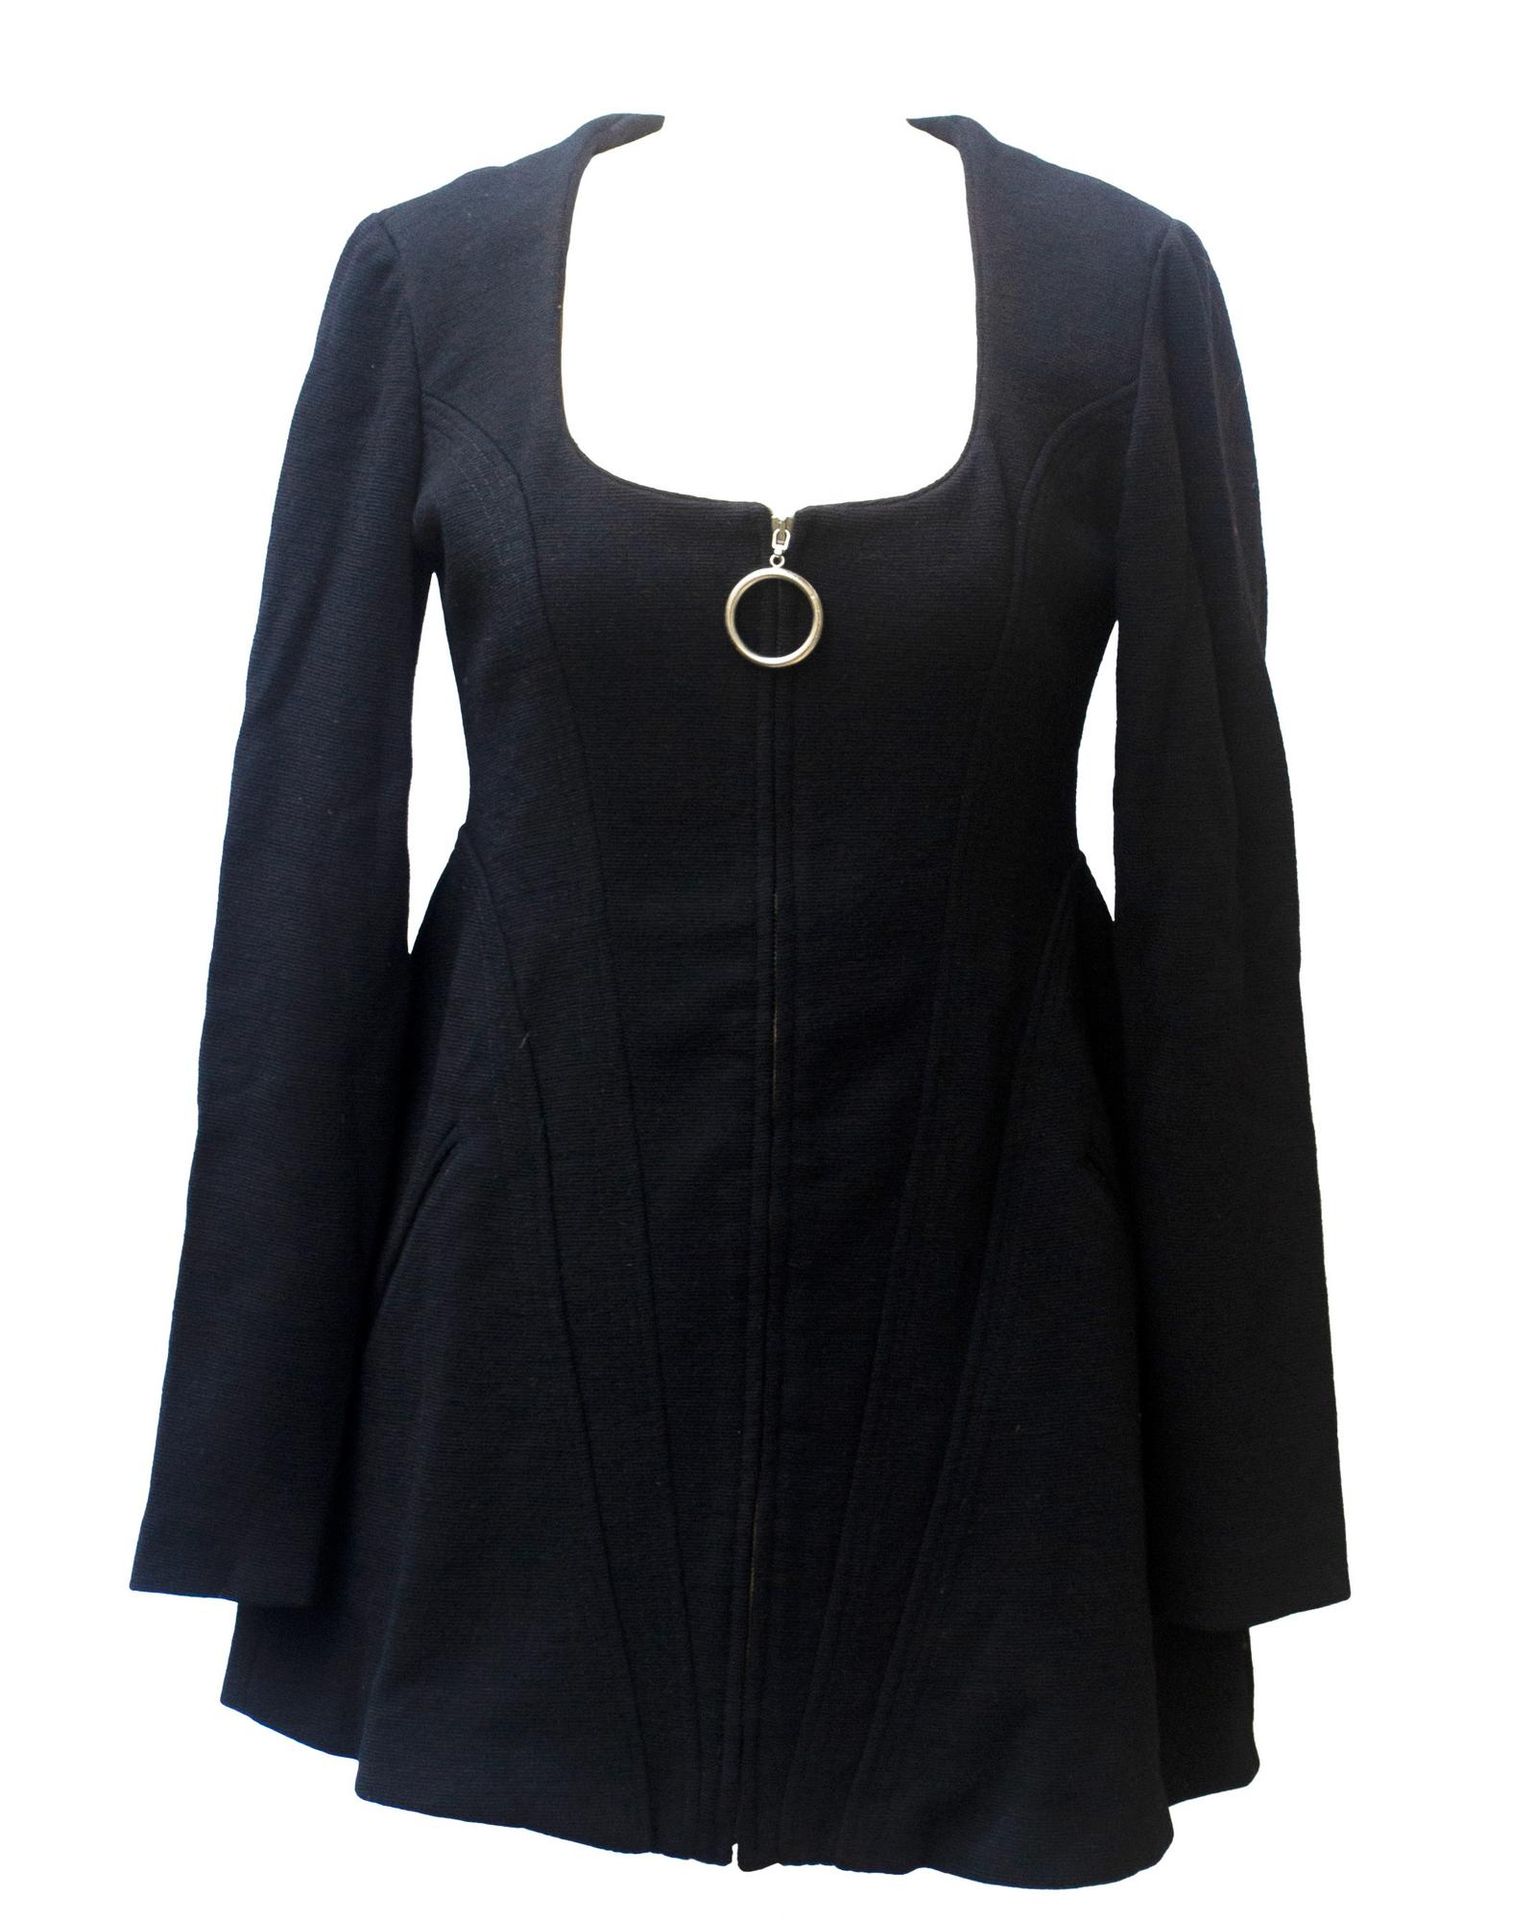 Null Martine Sitbon

MINI VESTIDO



Descripción:

Jersey de lana negro para est&hellip;